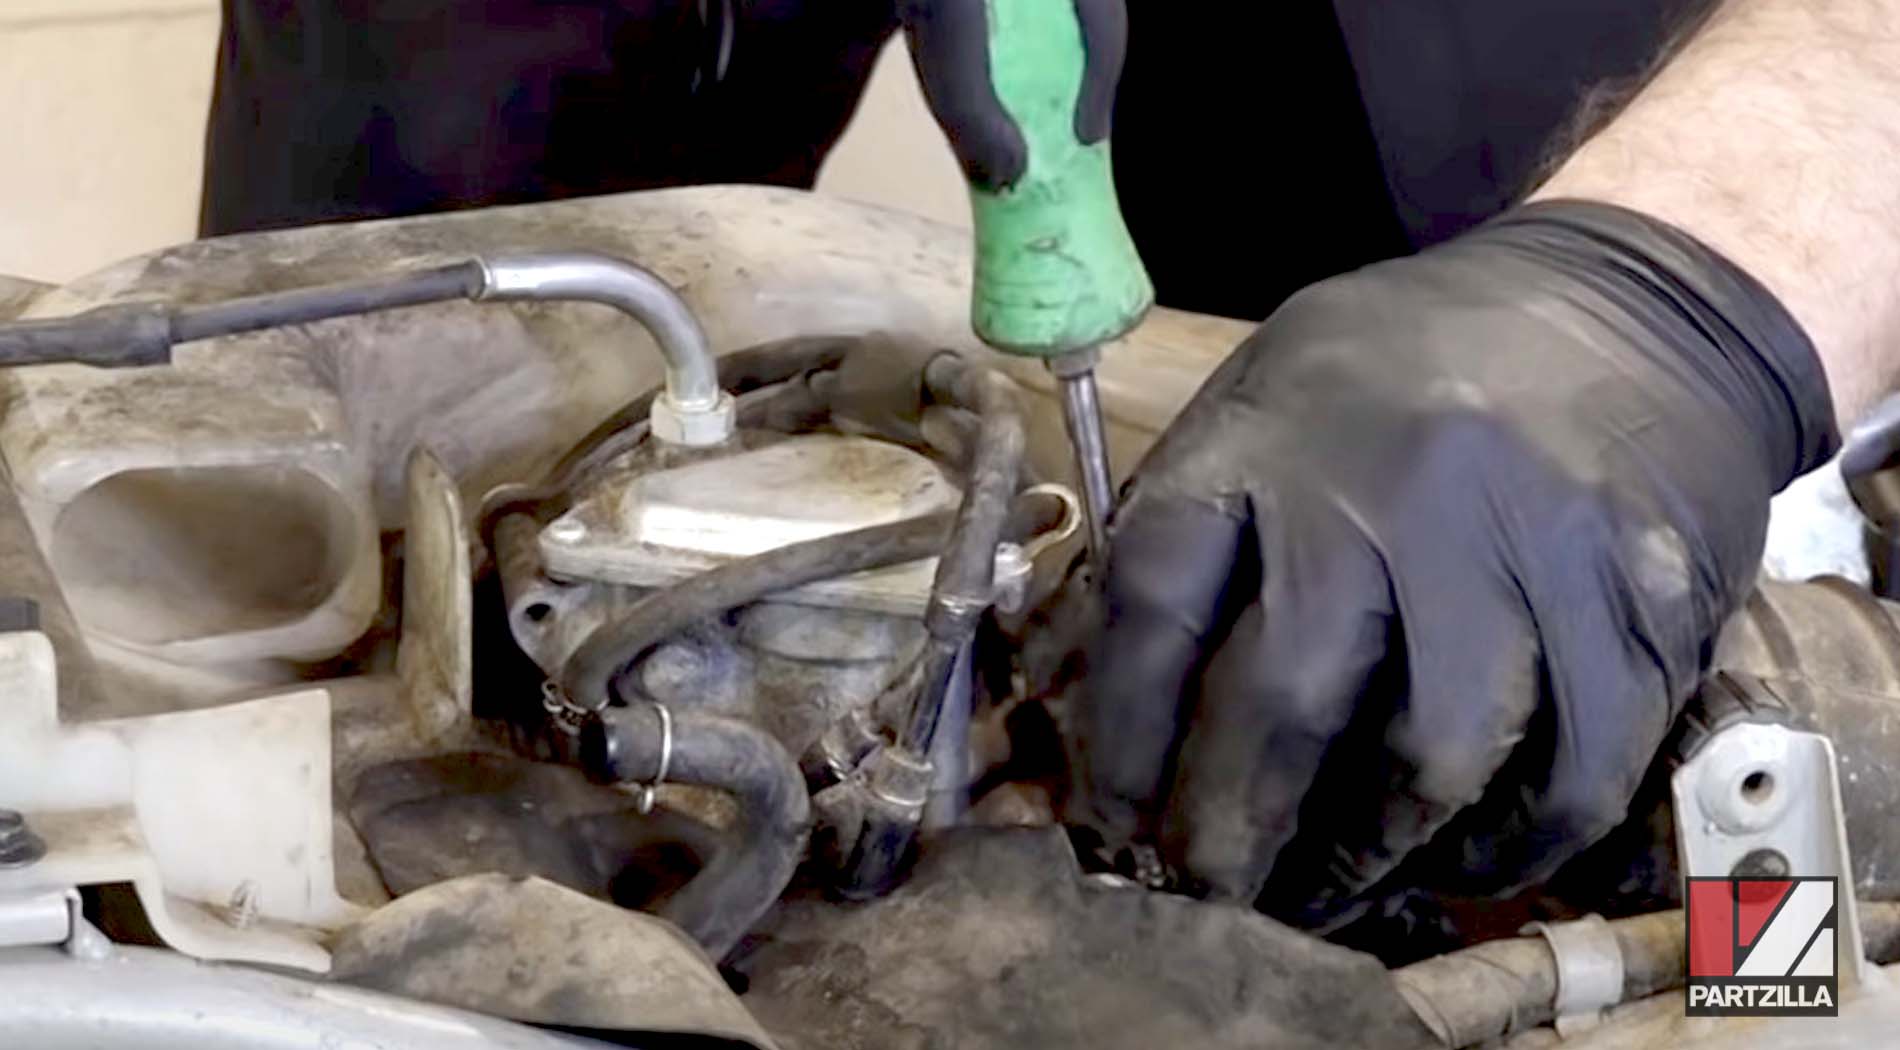 Honda TRX400 carburetor clean and rebuild